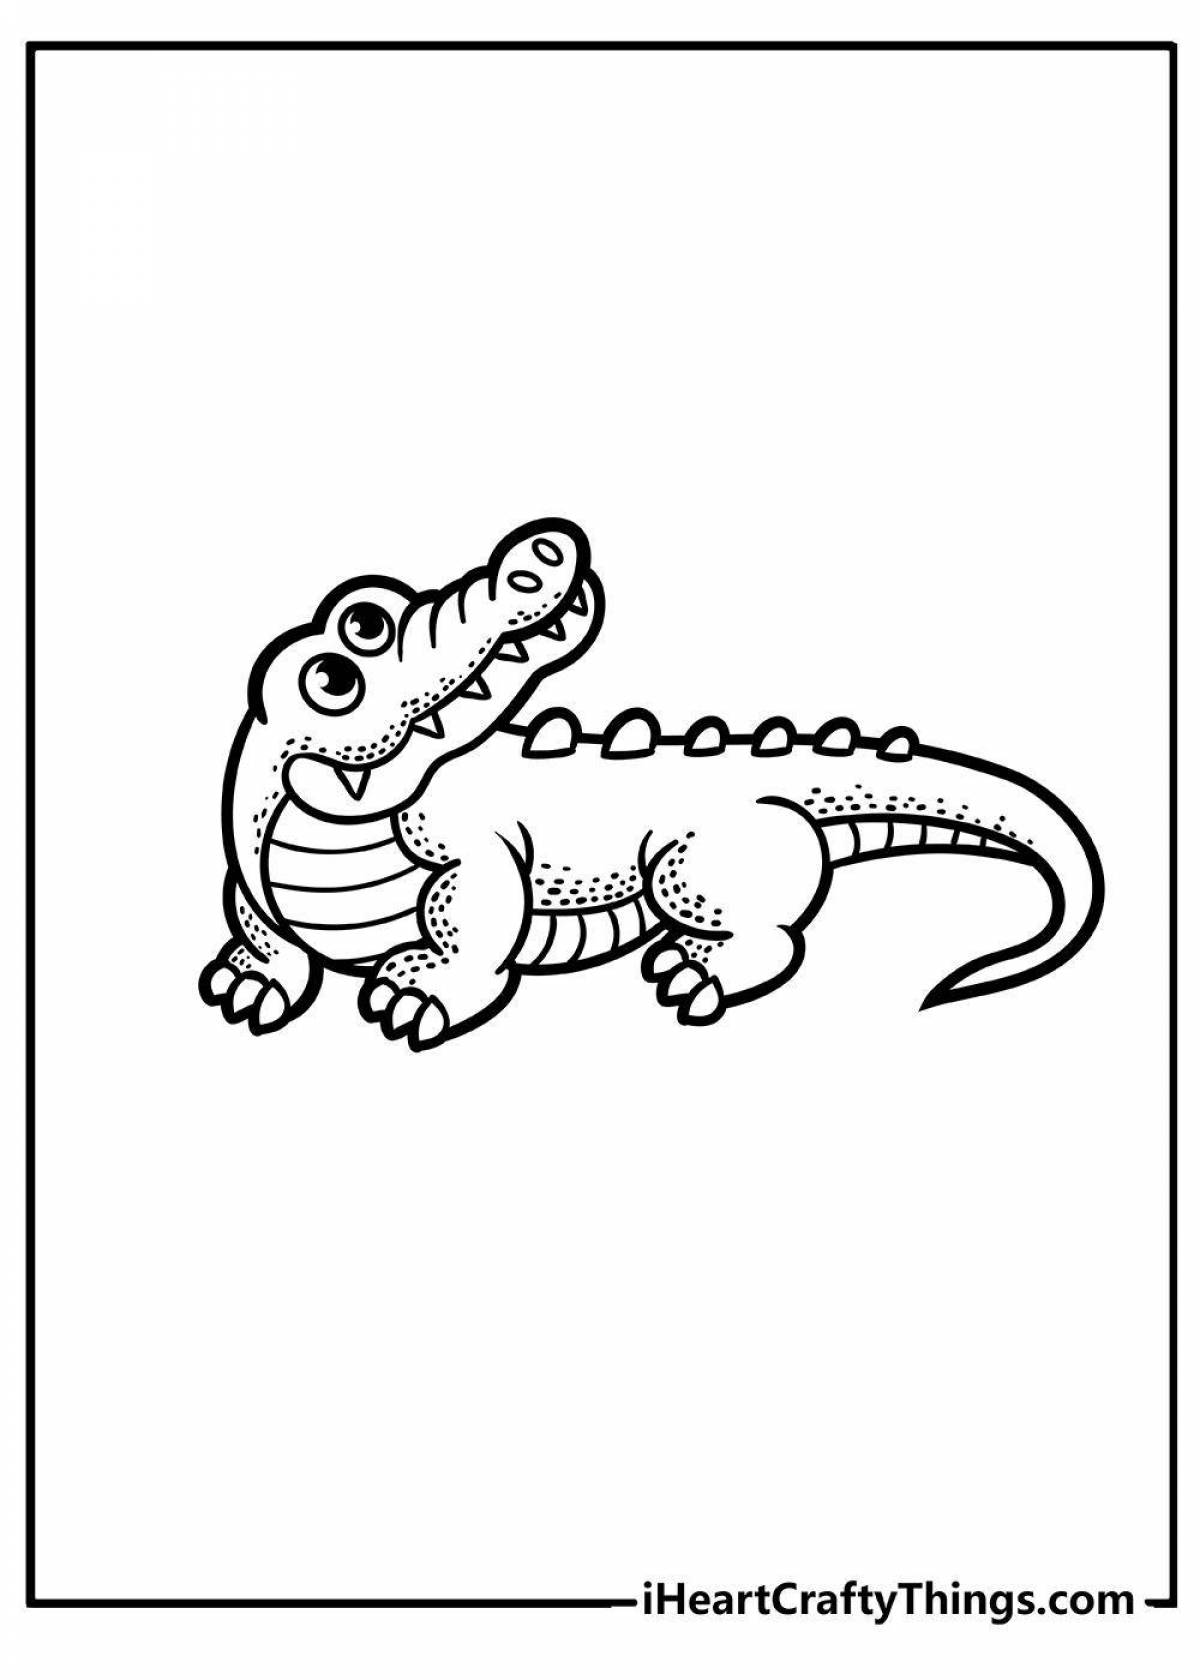 Увлекательная раскраска крокодил для детей 3-4 лет